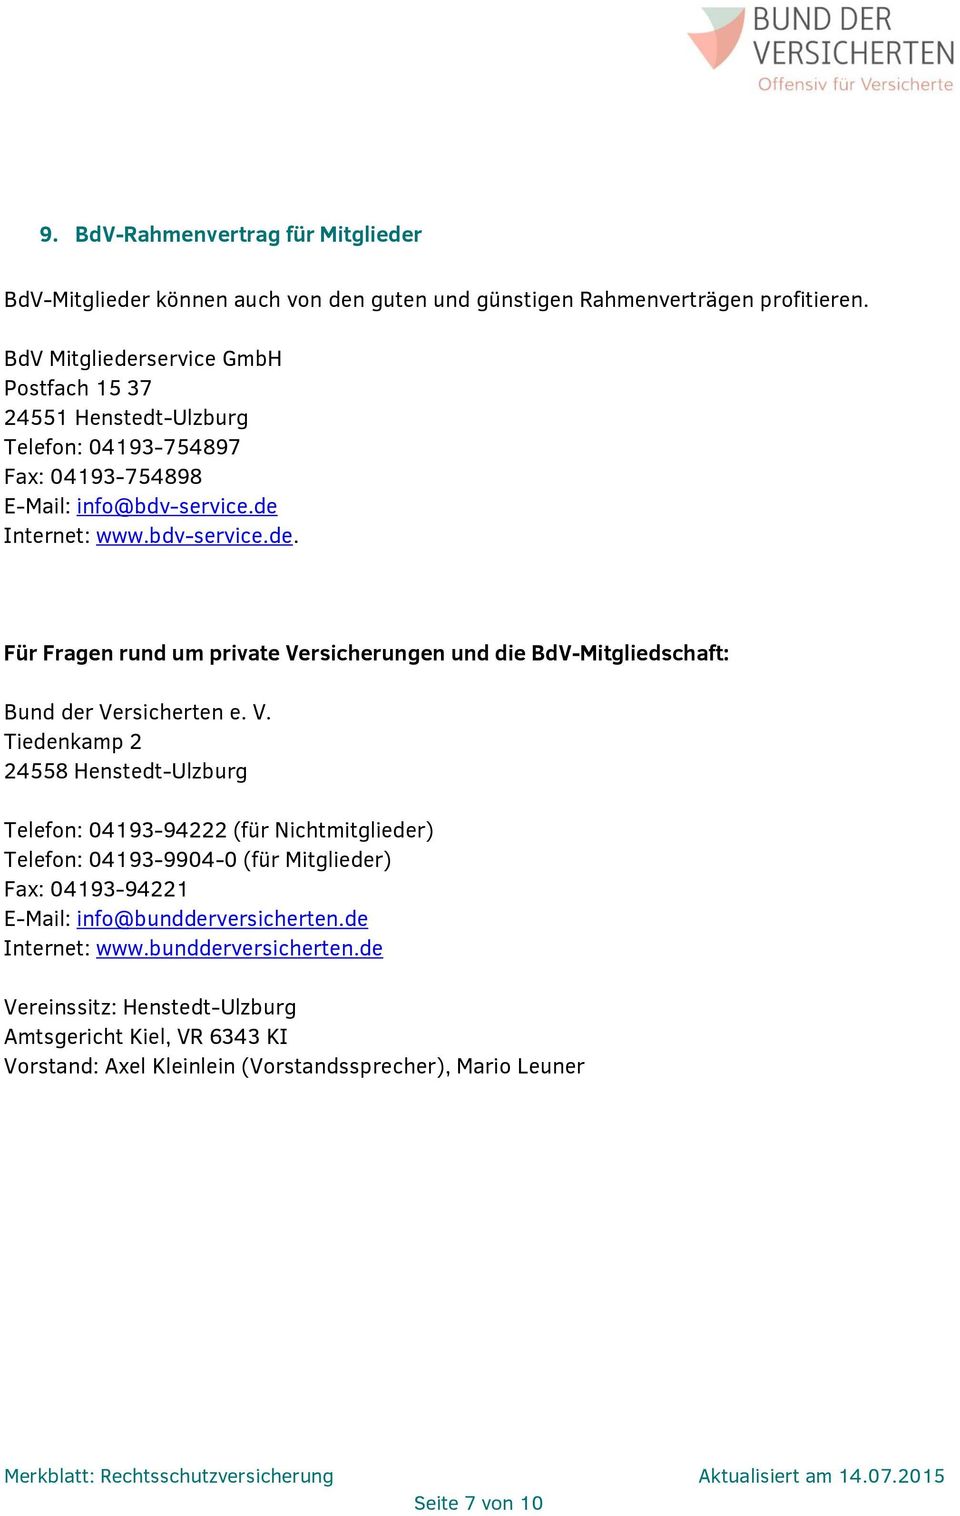 V. Tiedenkamp 2 24558 Henstedt-Ulzburg Telefon: 04193-94222 (für Nichtmitglieder) Telefon: 04193-9904-0 (für Mitglieder) Fax: 04193-94221 E-Mail: info@bundderversicherten.